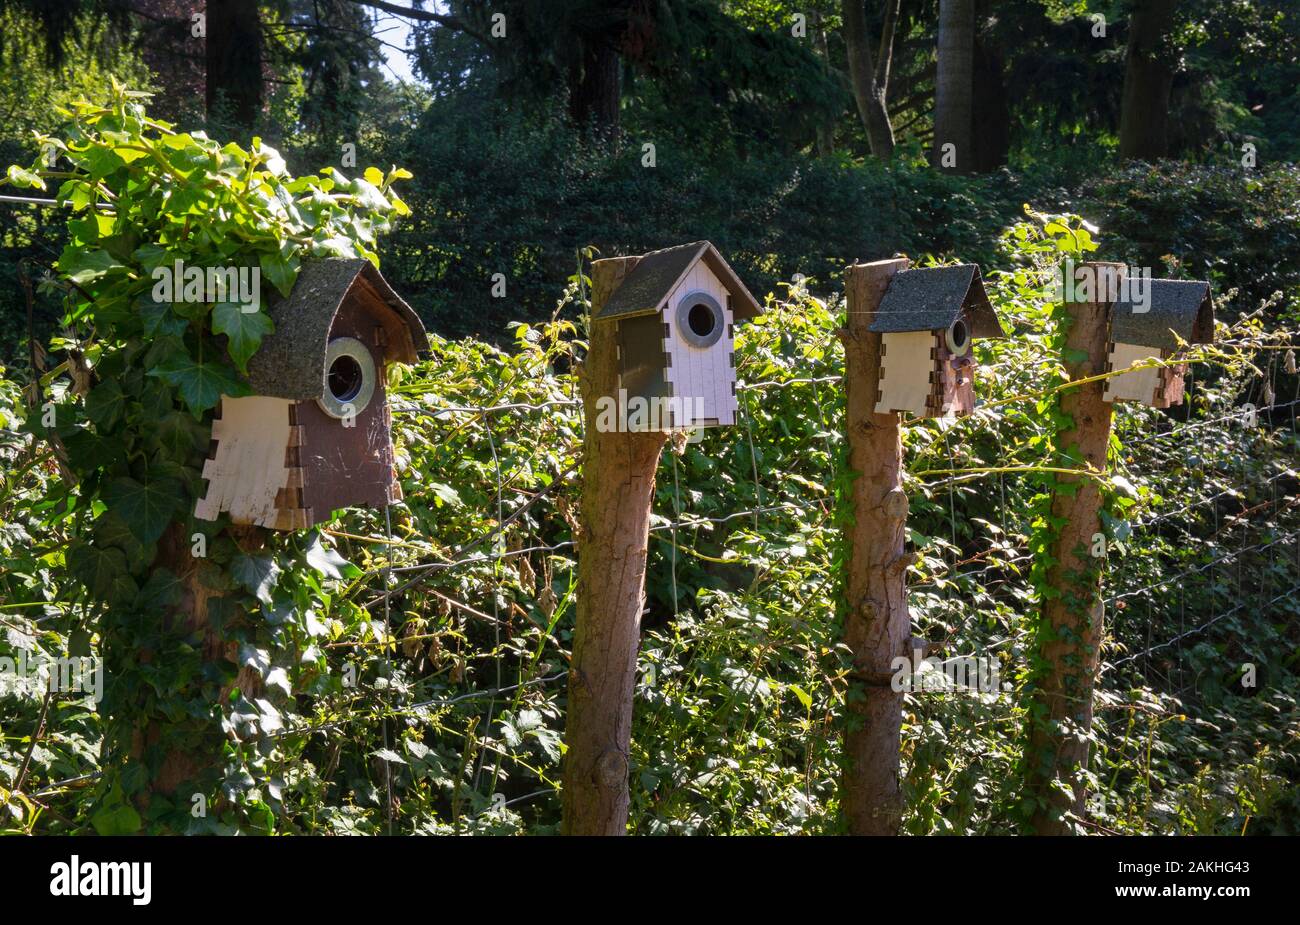 Line of wooden bird boxes in english garden,England Stock Photo